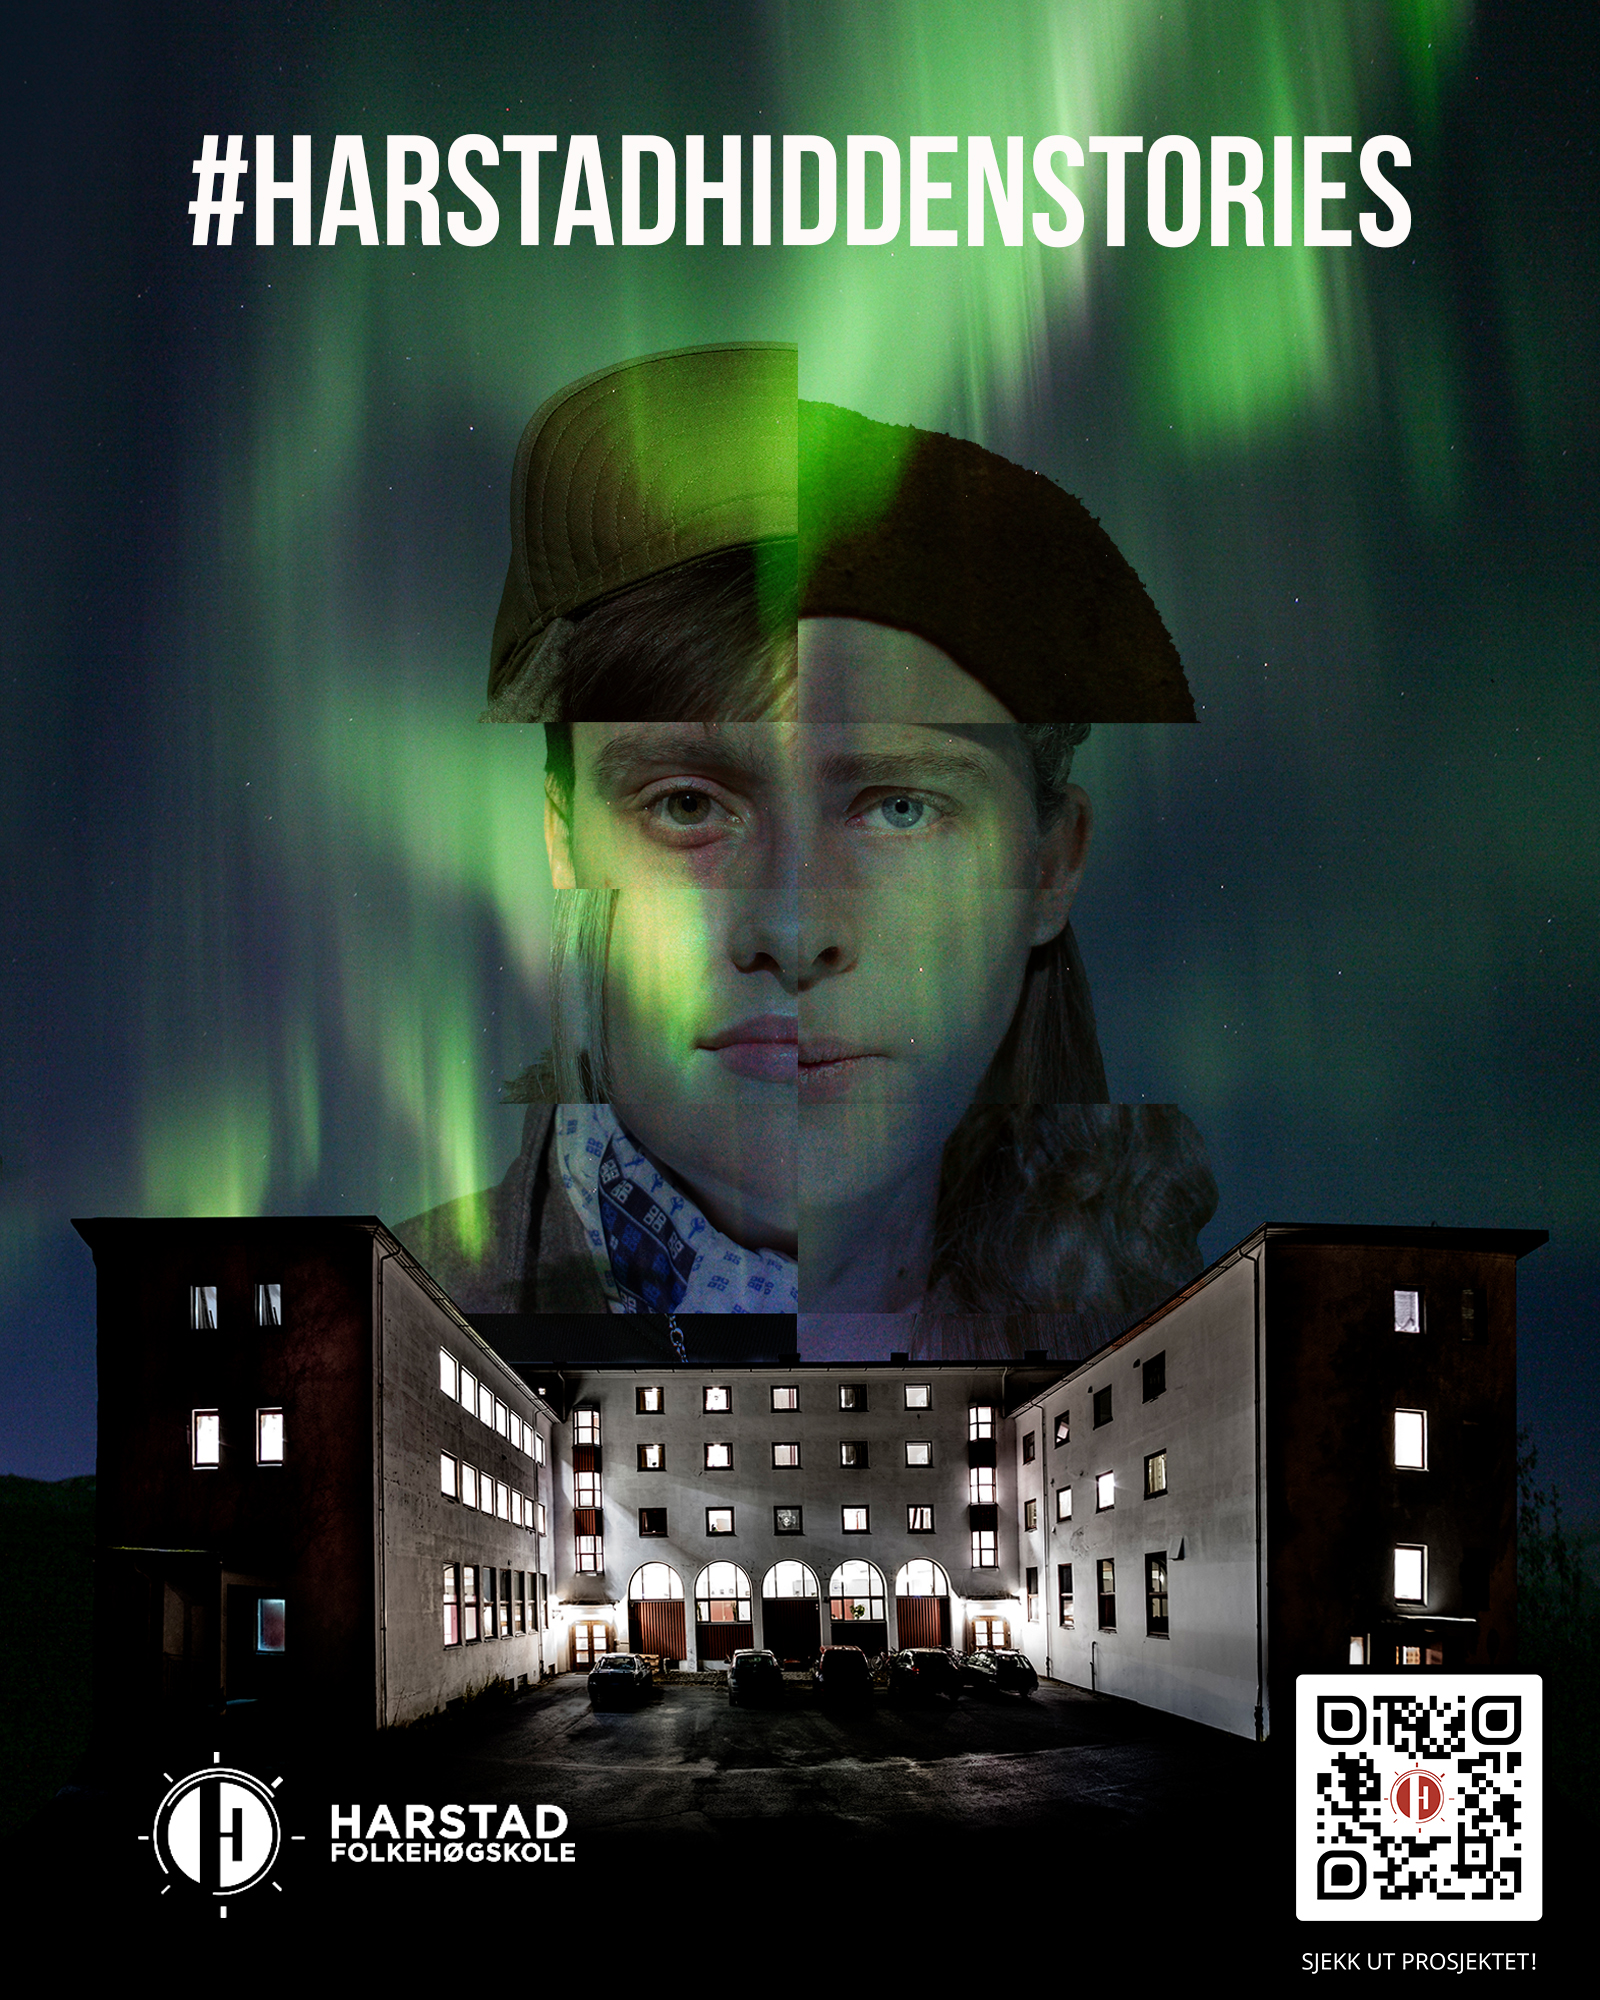 plakat med påskriften #harstad hidden stories. Nordlys over skolebygningen, samt bilde av en soldat i bakgrunnen